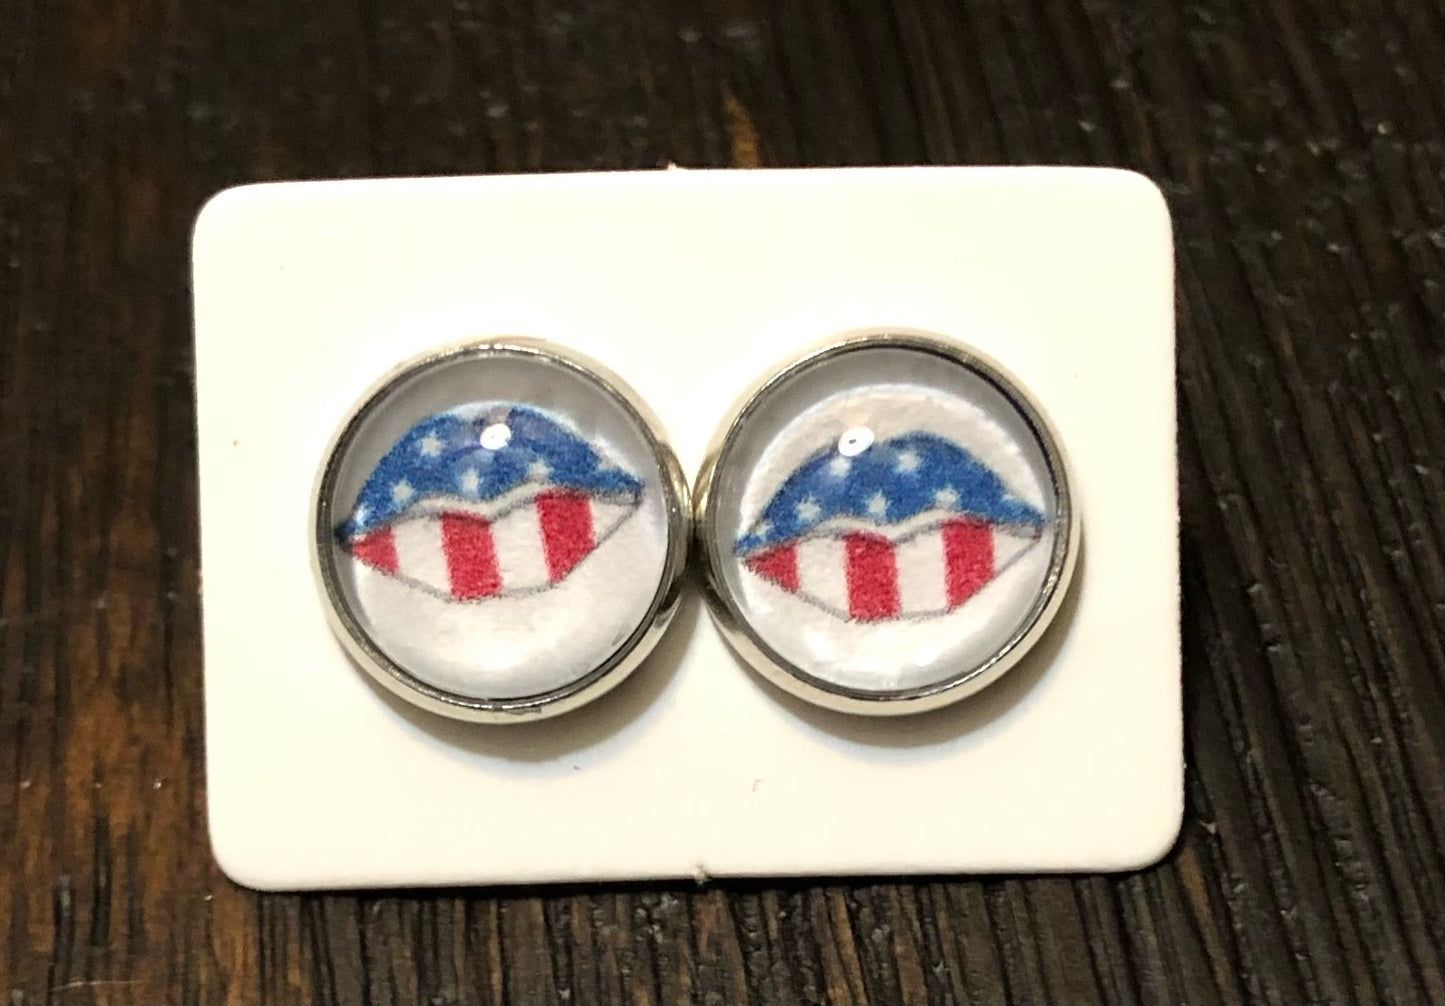 Patriotic Earrings